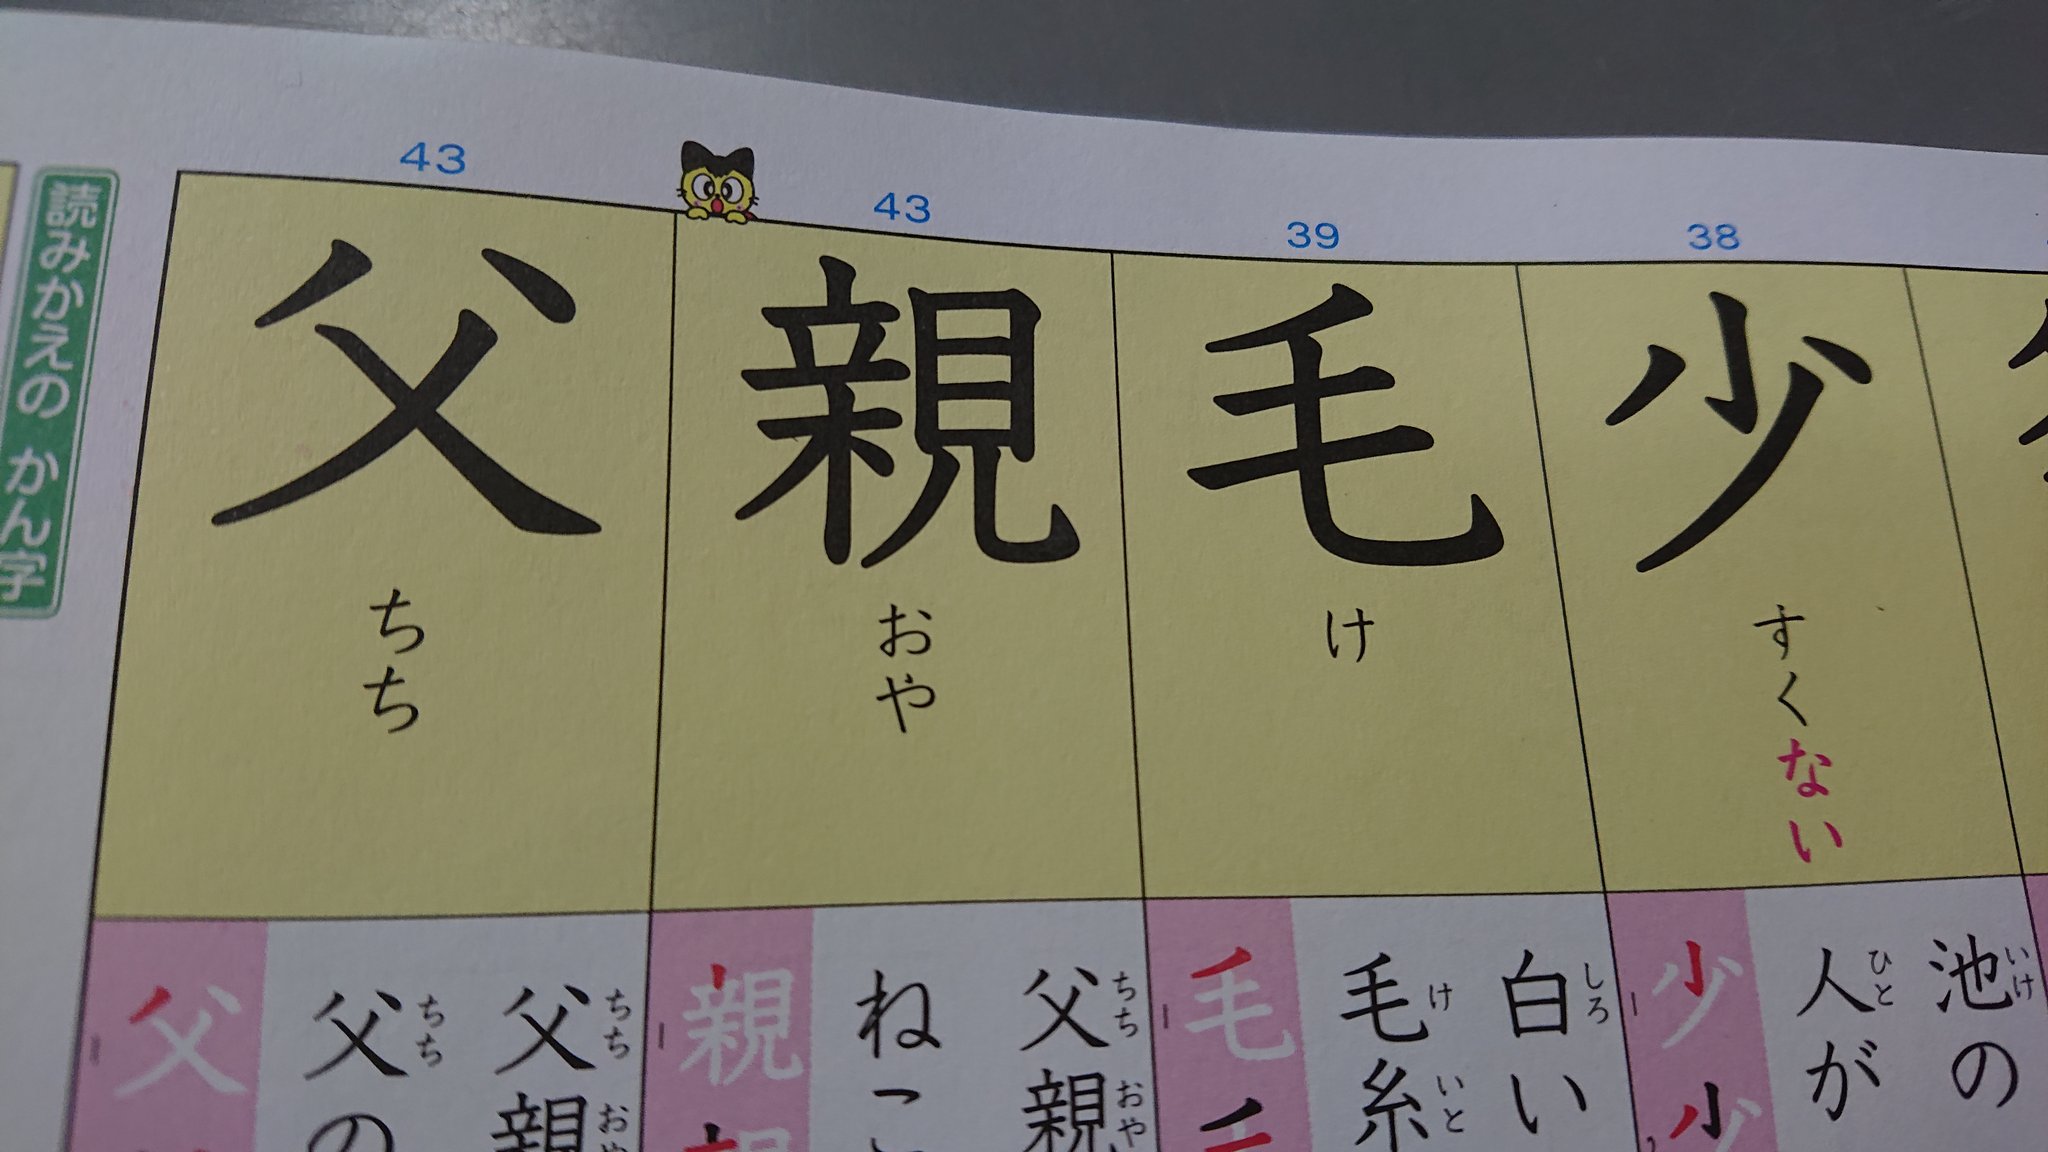 子どもの漢字練習帳のおもしろい漢字の並び 笑